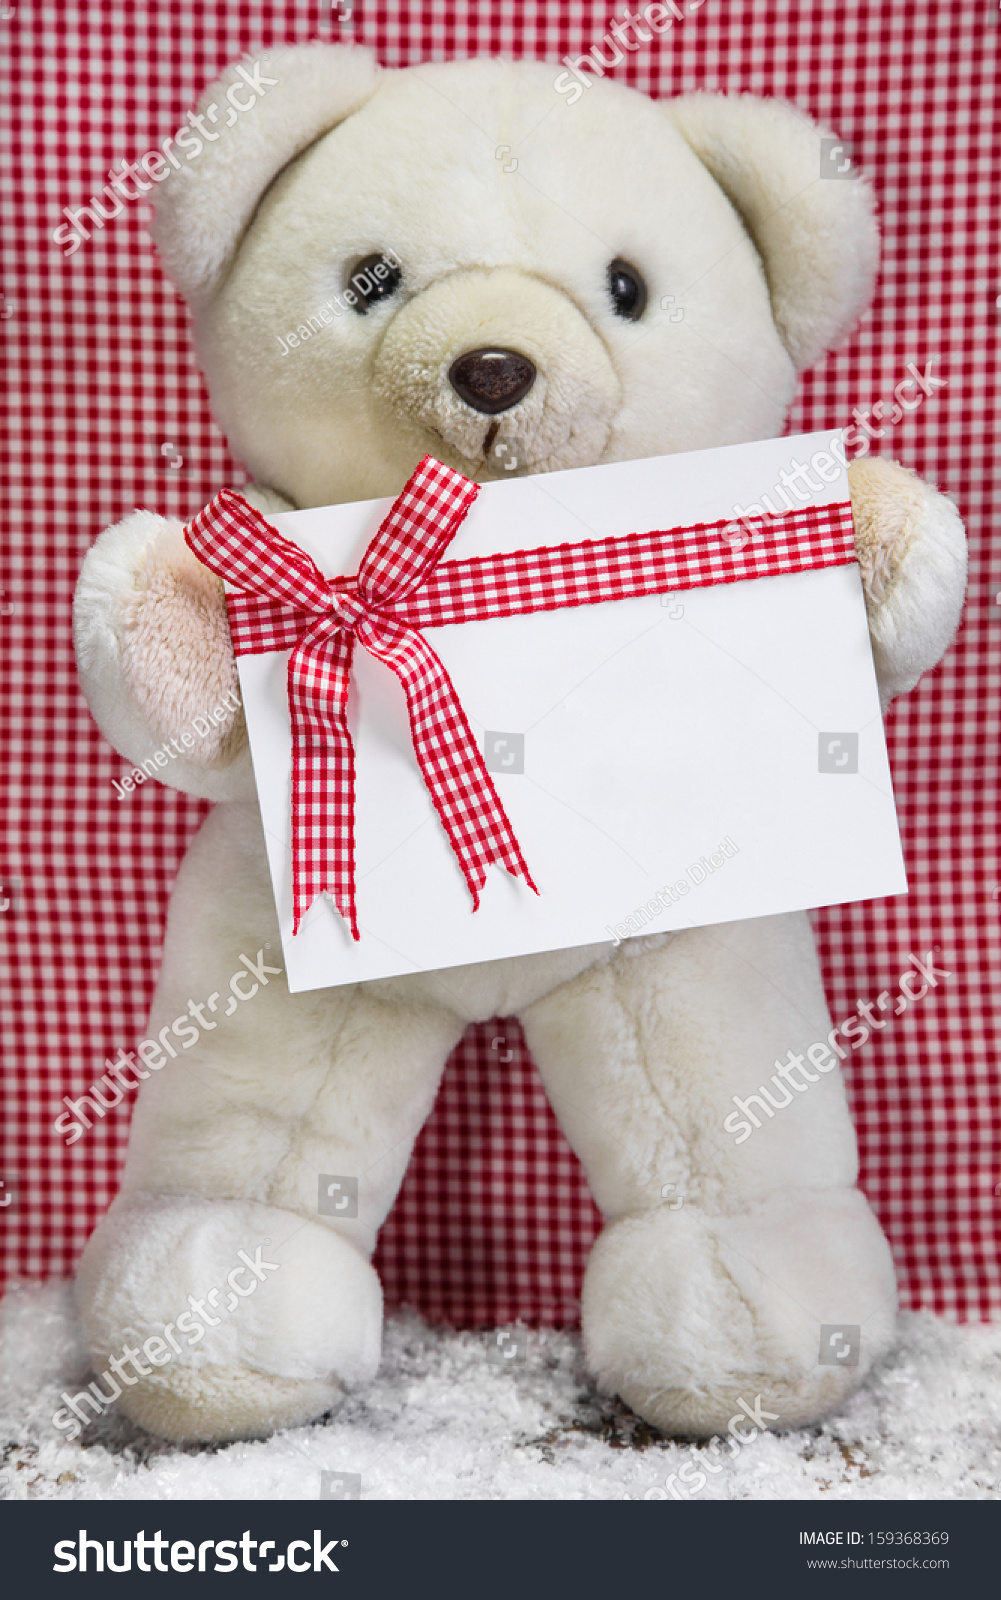 teddy bear holding a box